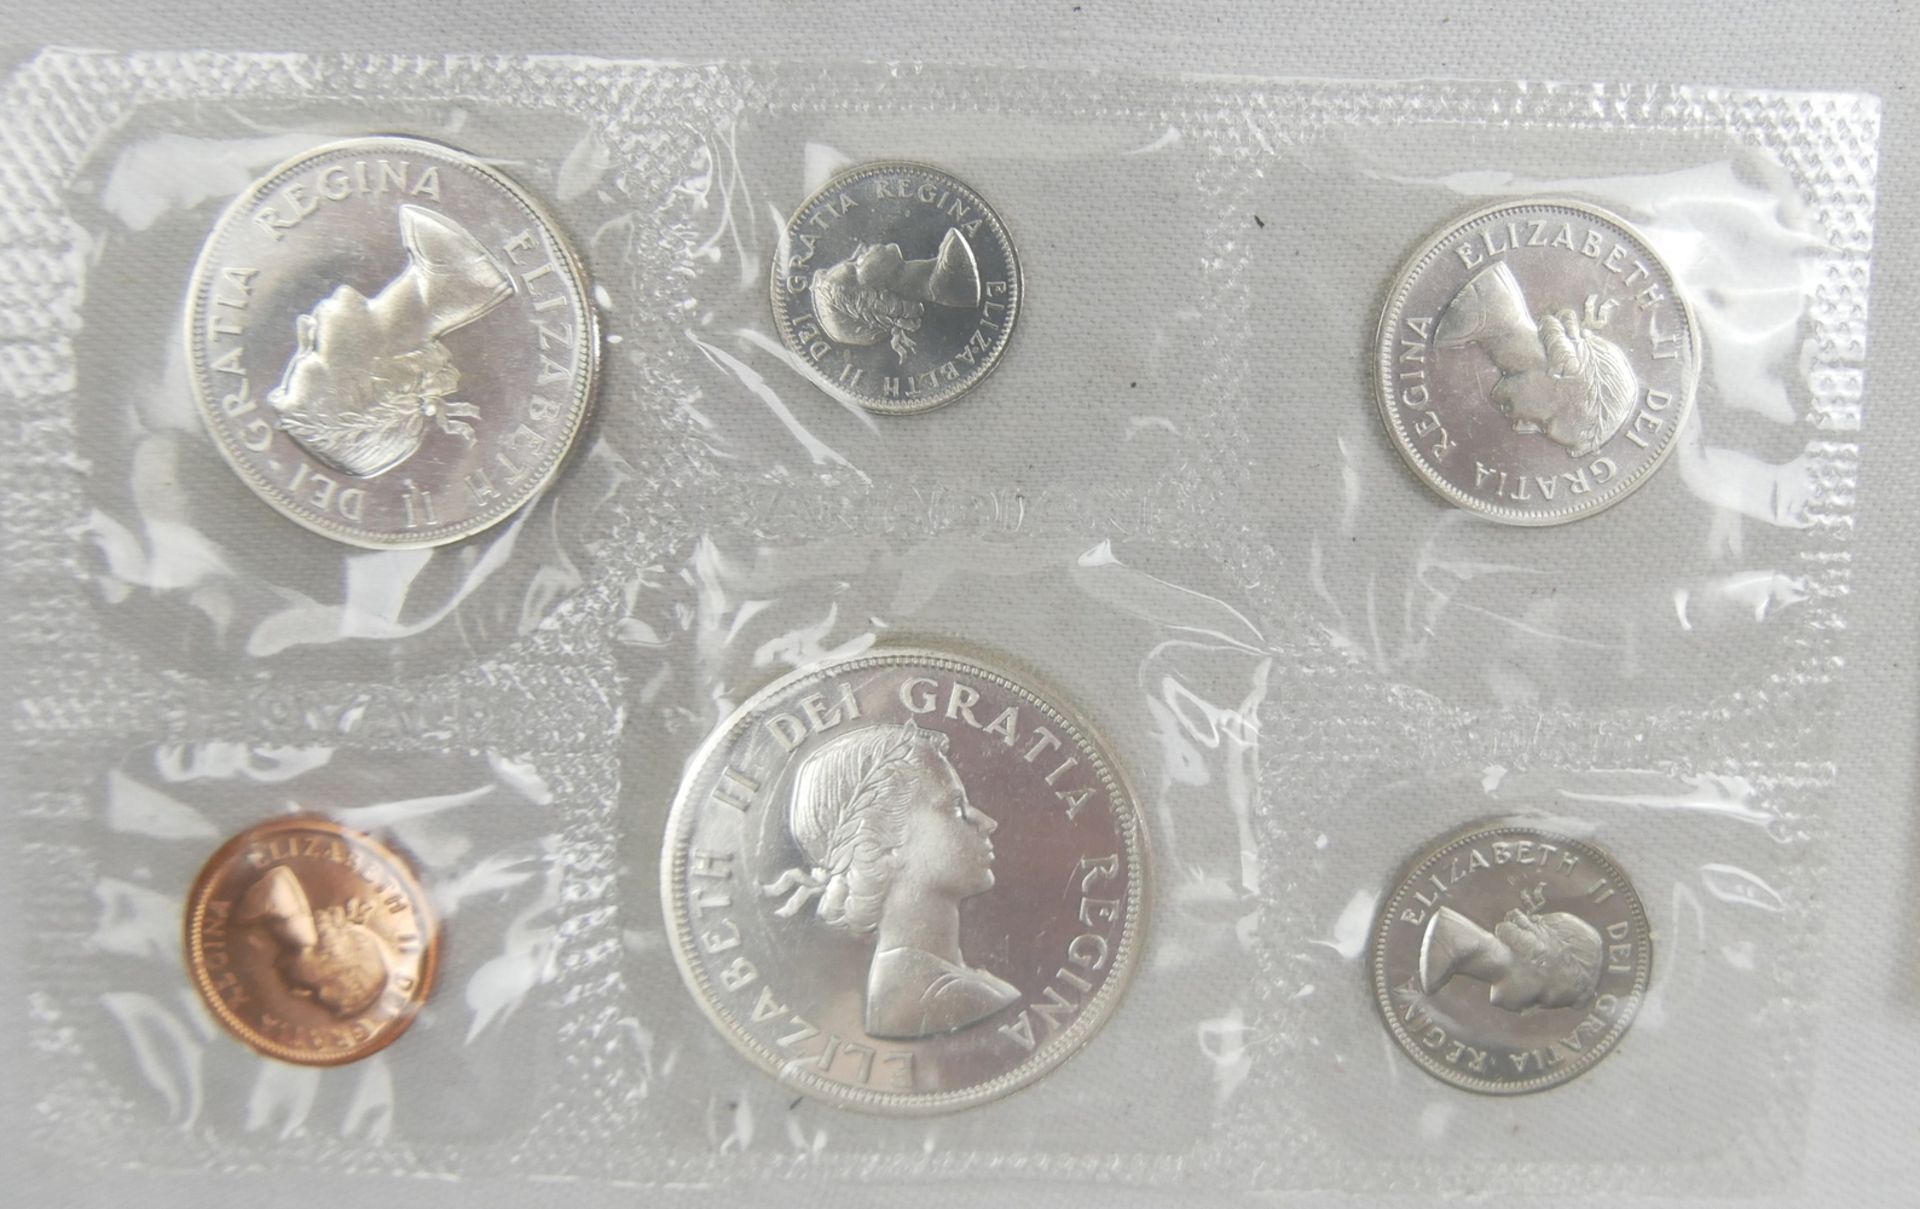 Münzsatz Canada 1964 sowie 1 Canada Dollar Silber 1978 - Bild 2 aus 4